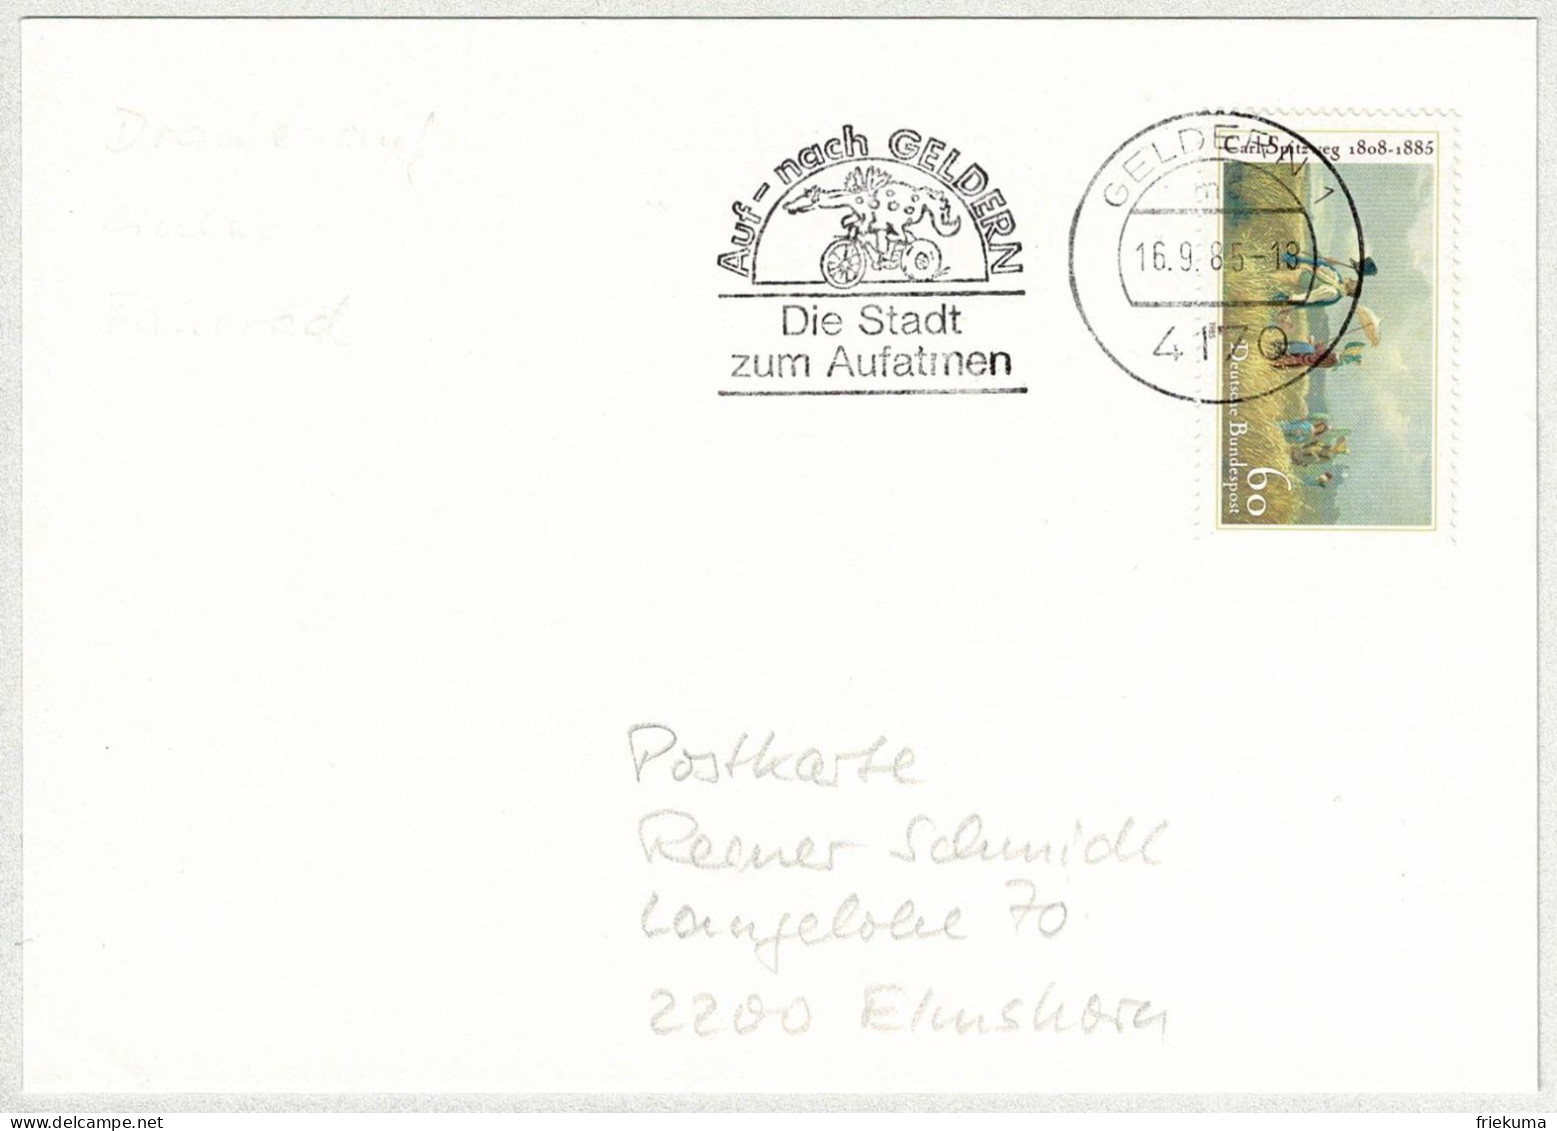 Deutsche Bundespost 1985, Postkarte Geldern - Elmshorn, Drache Auf Fahrrad, Fabelwesen - Fairy Tales, Popular Stories & Legends